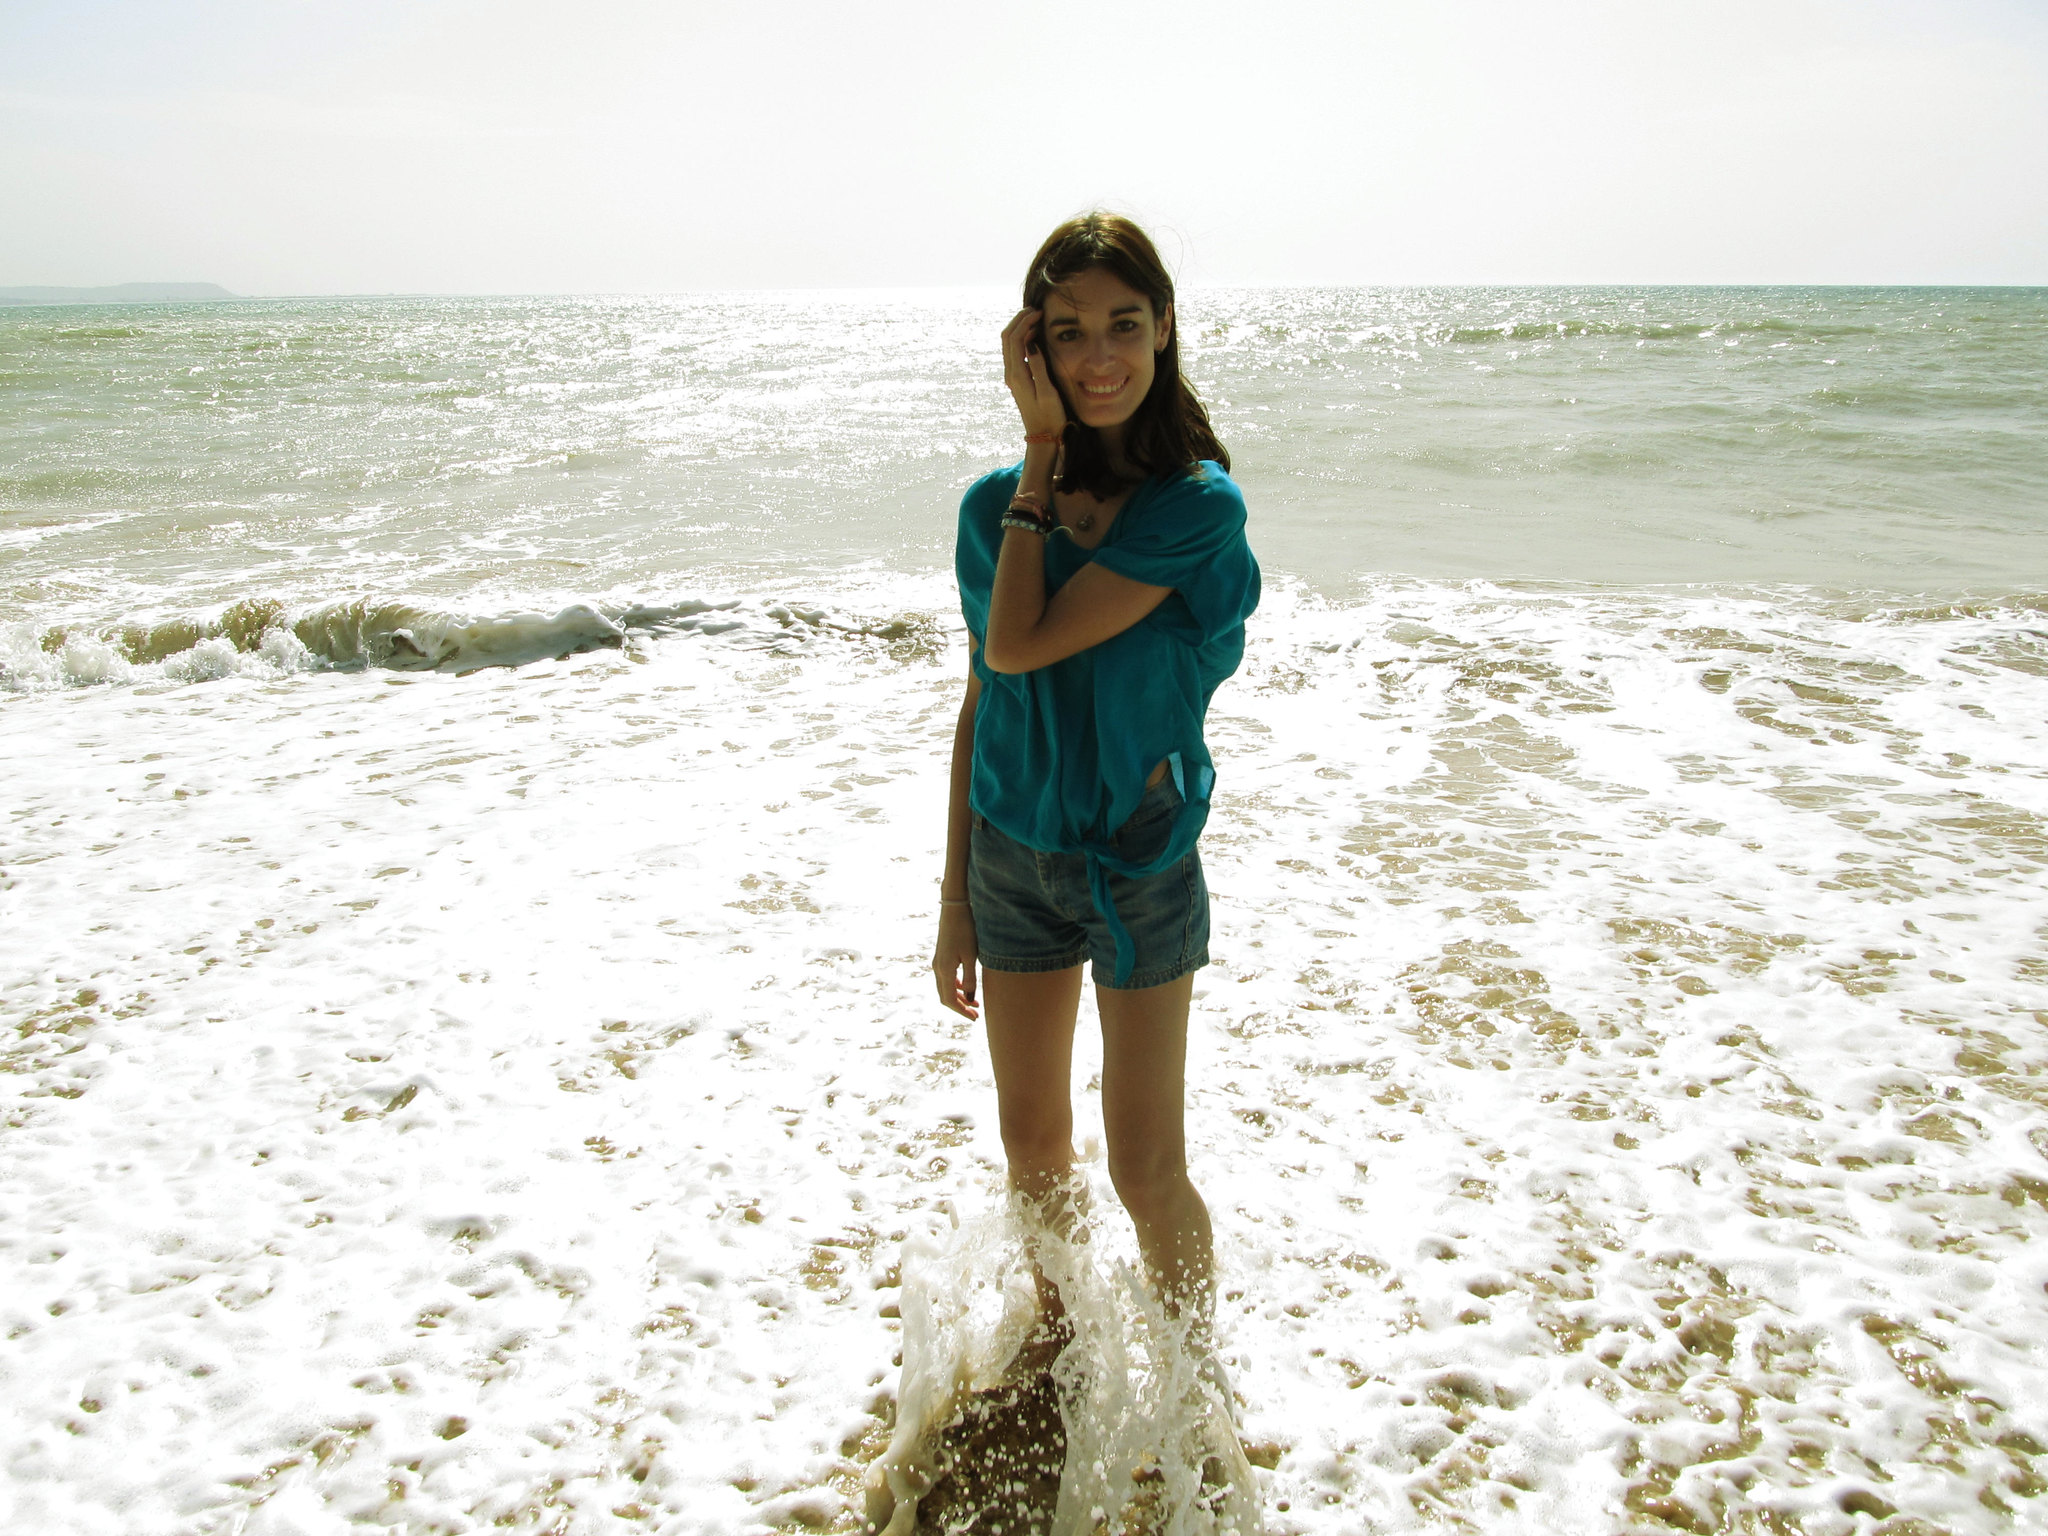 Joven sonríe a orillas del mar | Fuente: Flickr